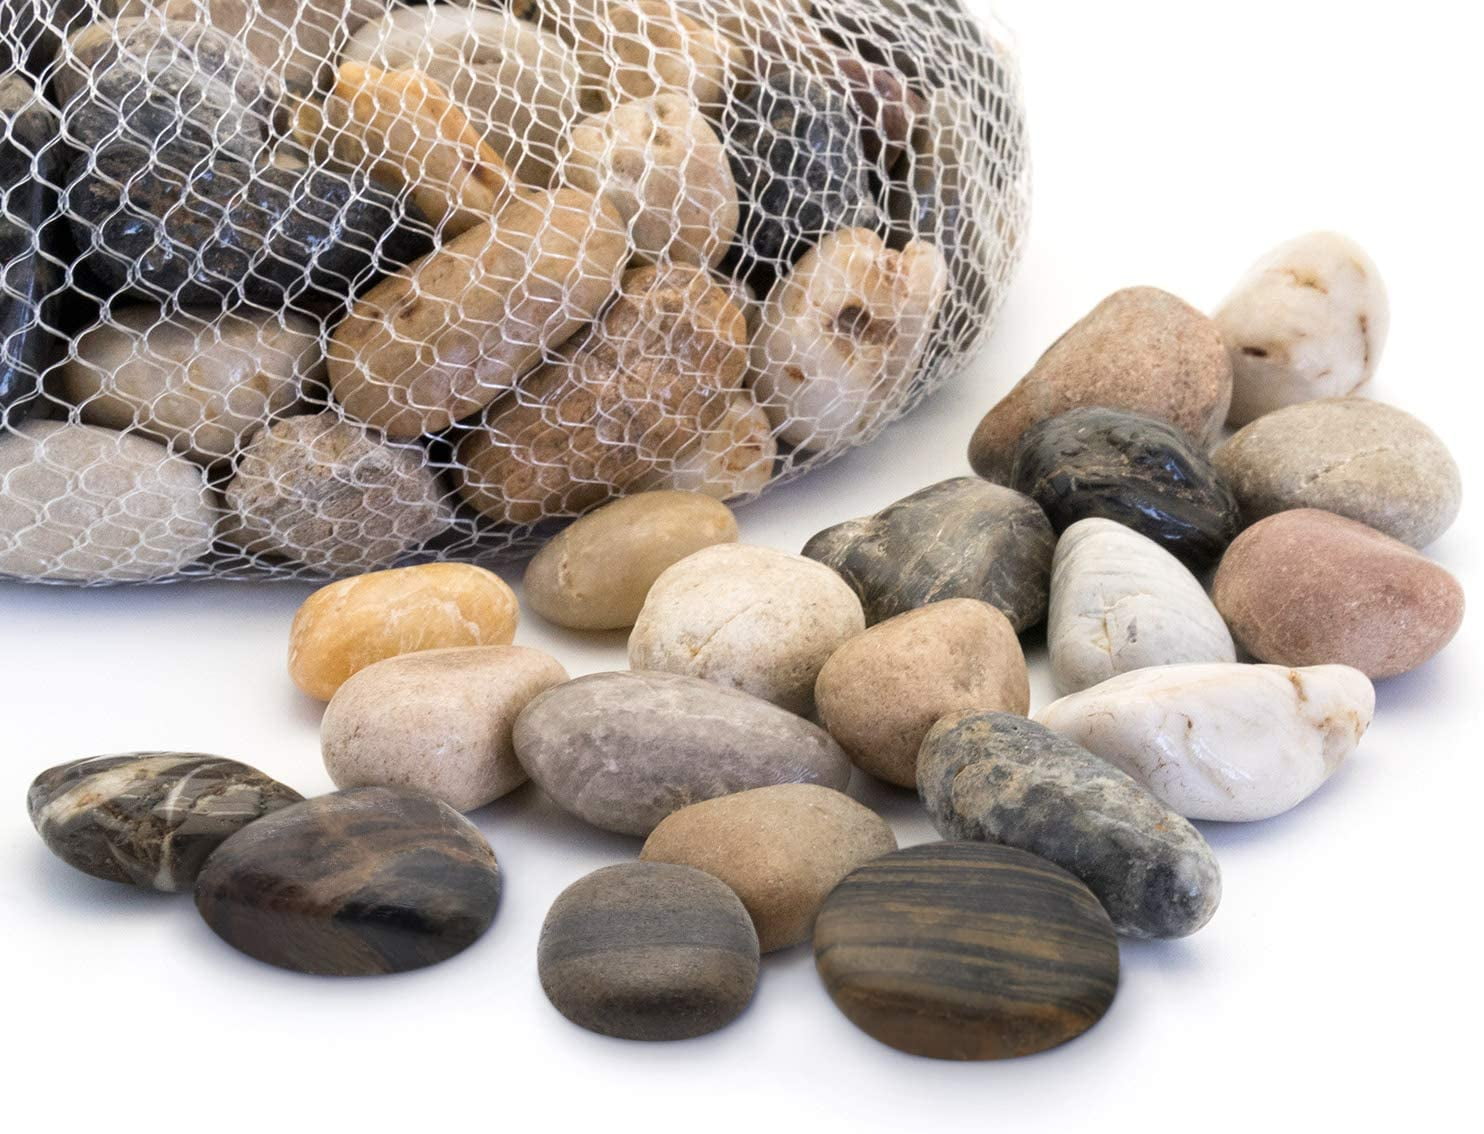 Details about   10Lb Decorative Polished Pebbles/River Rocks/Aquarium Gravel Large Black 10 lb 